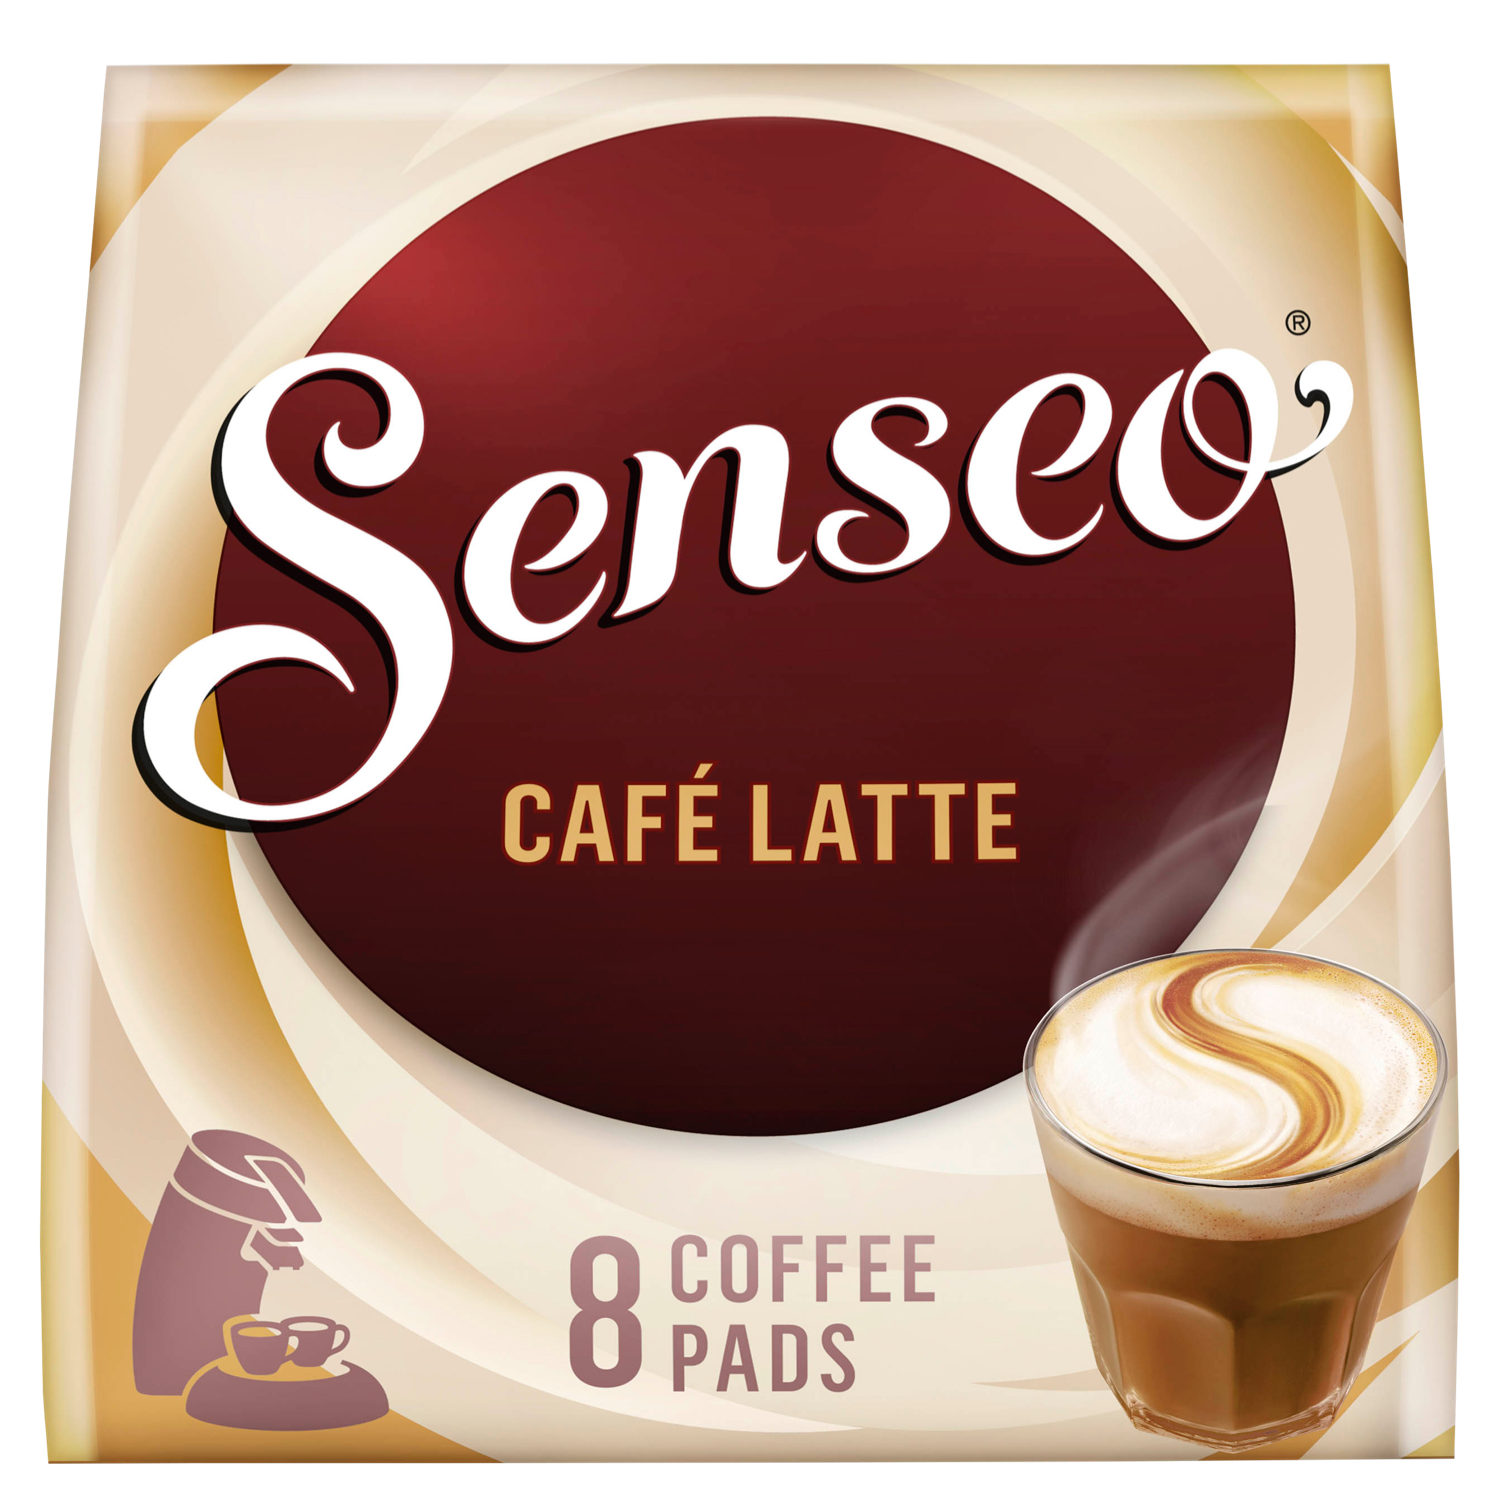 houder Onderzoek het Snoep Senseo Café Latte Koffiepads bestellen? DekaMarkt